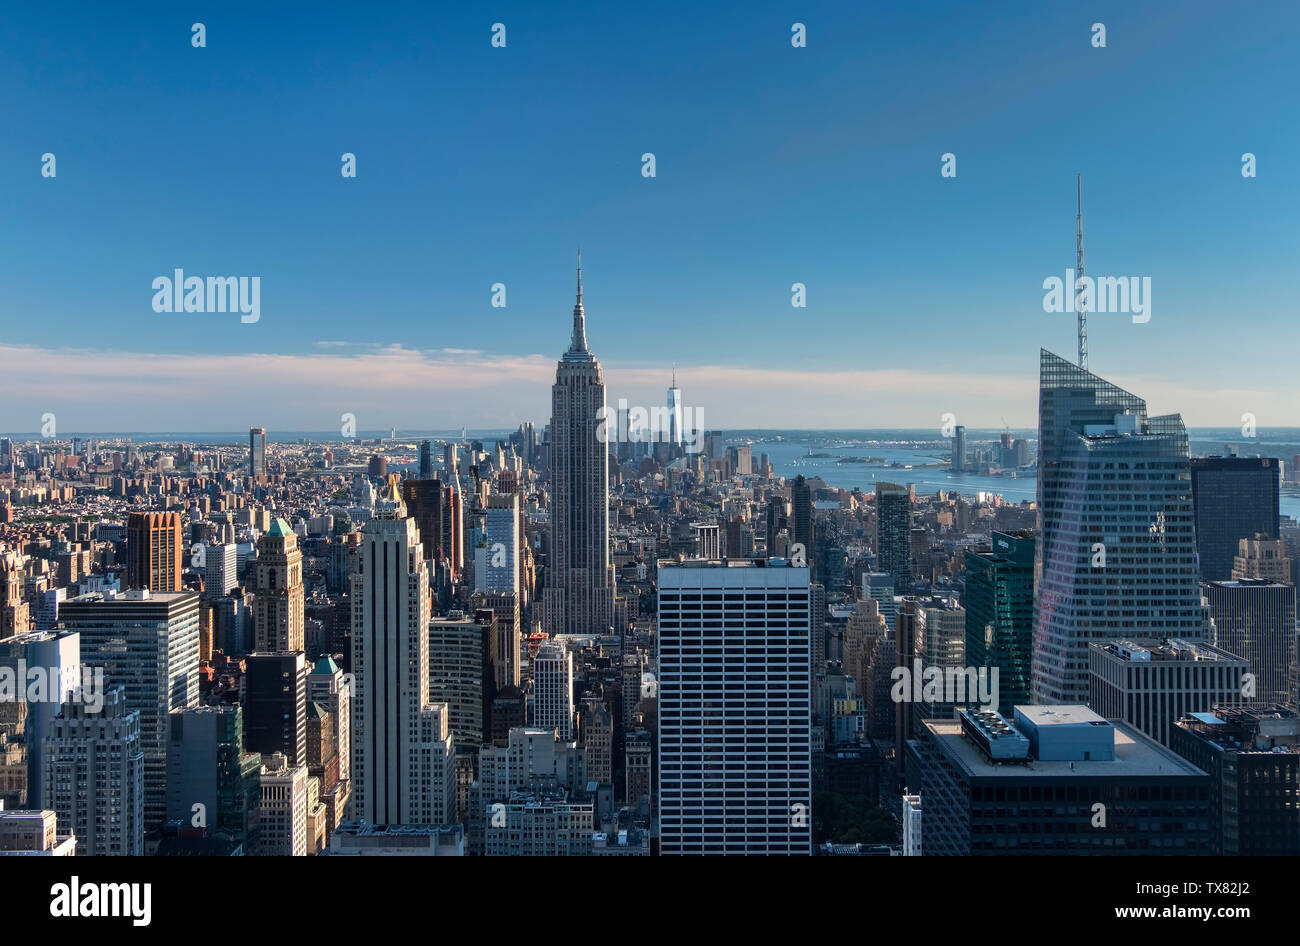 El horizonte de Manhattan, el Empire State Building y la estatua de la Libertad, Nueva York, EE.UU. Foto de stock